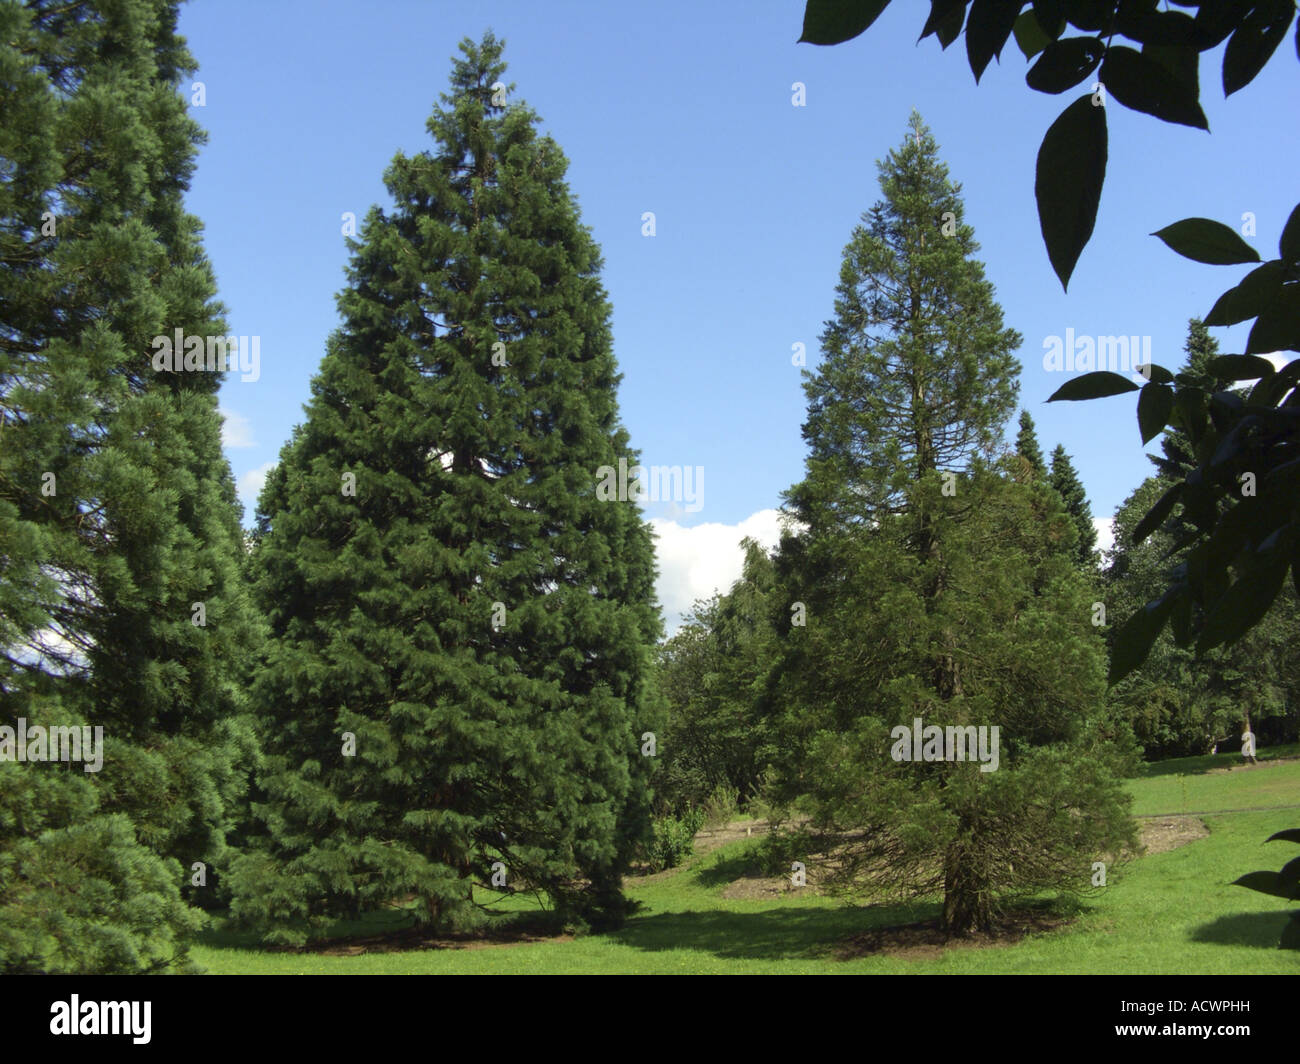 giant sequoia, giant redwood Sequoiadendron giganteum, single trees Stock Photo